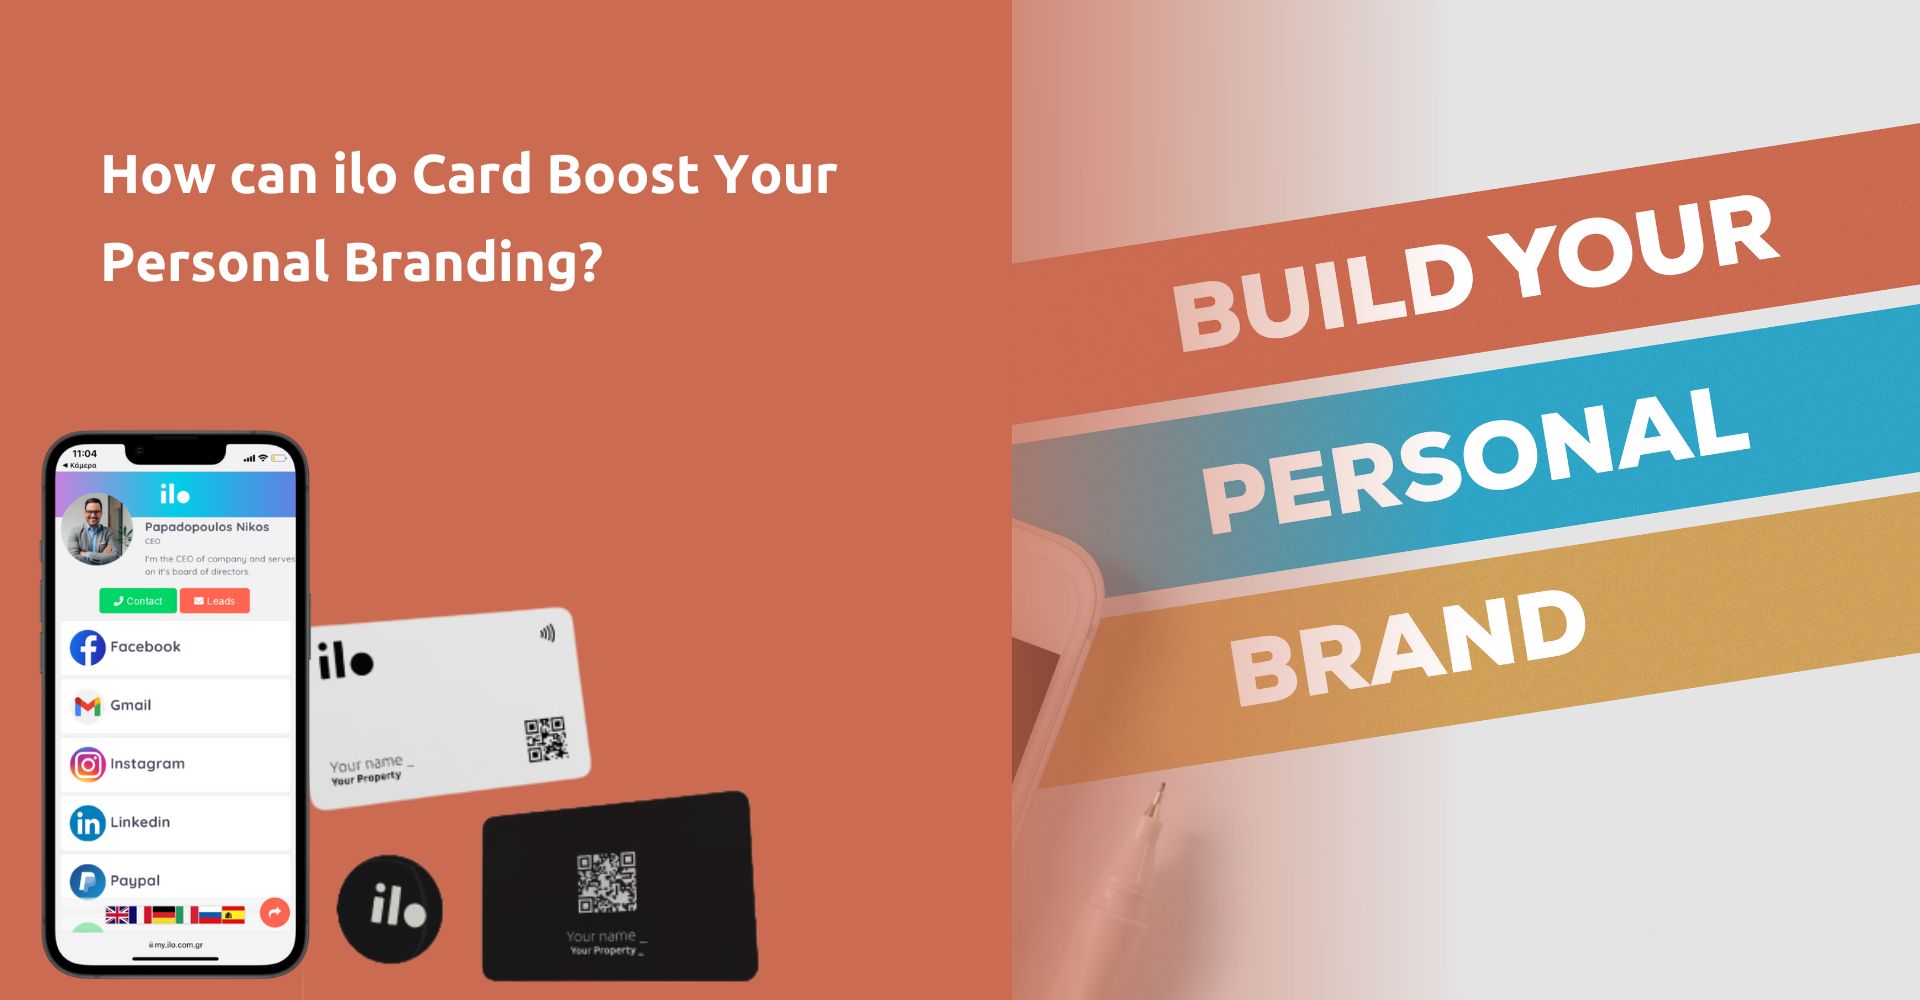 Πως η κάρτα ilo βοηθά σε ένα δυνατό προσωπικό branding;